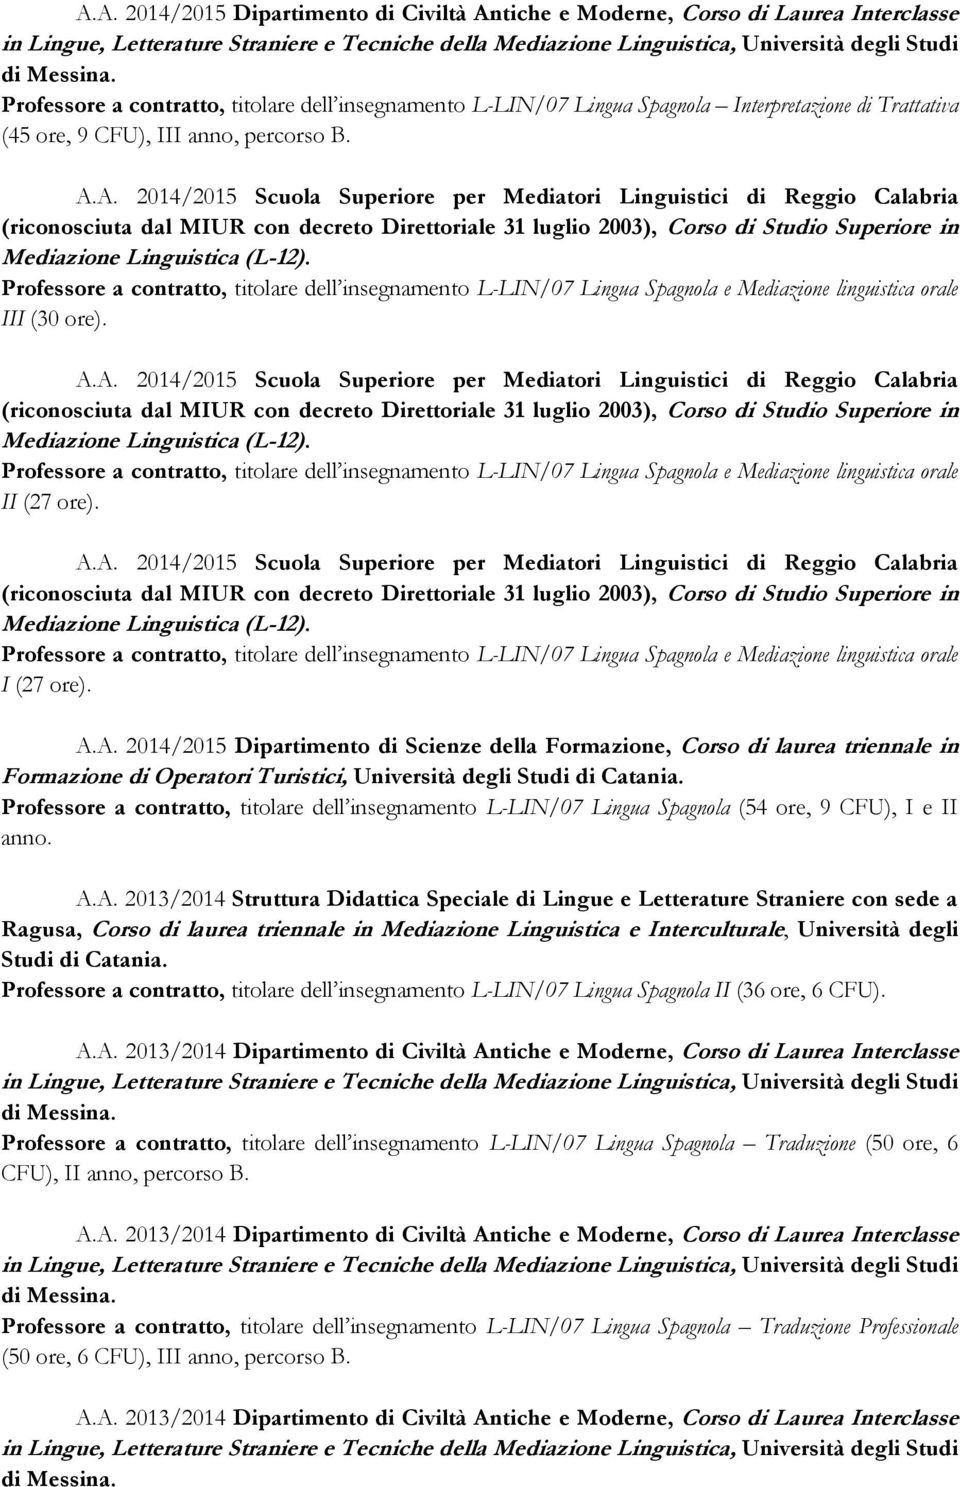 A. 2014/2015 Scuola Superiore per Mediatori Linguistici di Reggio Calabria (riconosciuta dal MIUR con decreto Direttoriale 31 luglio 2003), Corso di Studio Superiore in Mediazione Linguistica (L-12).